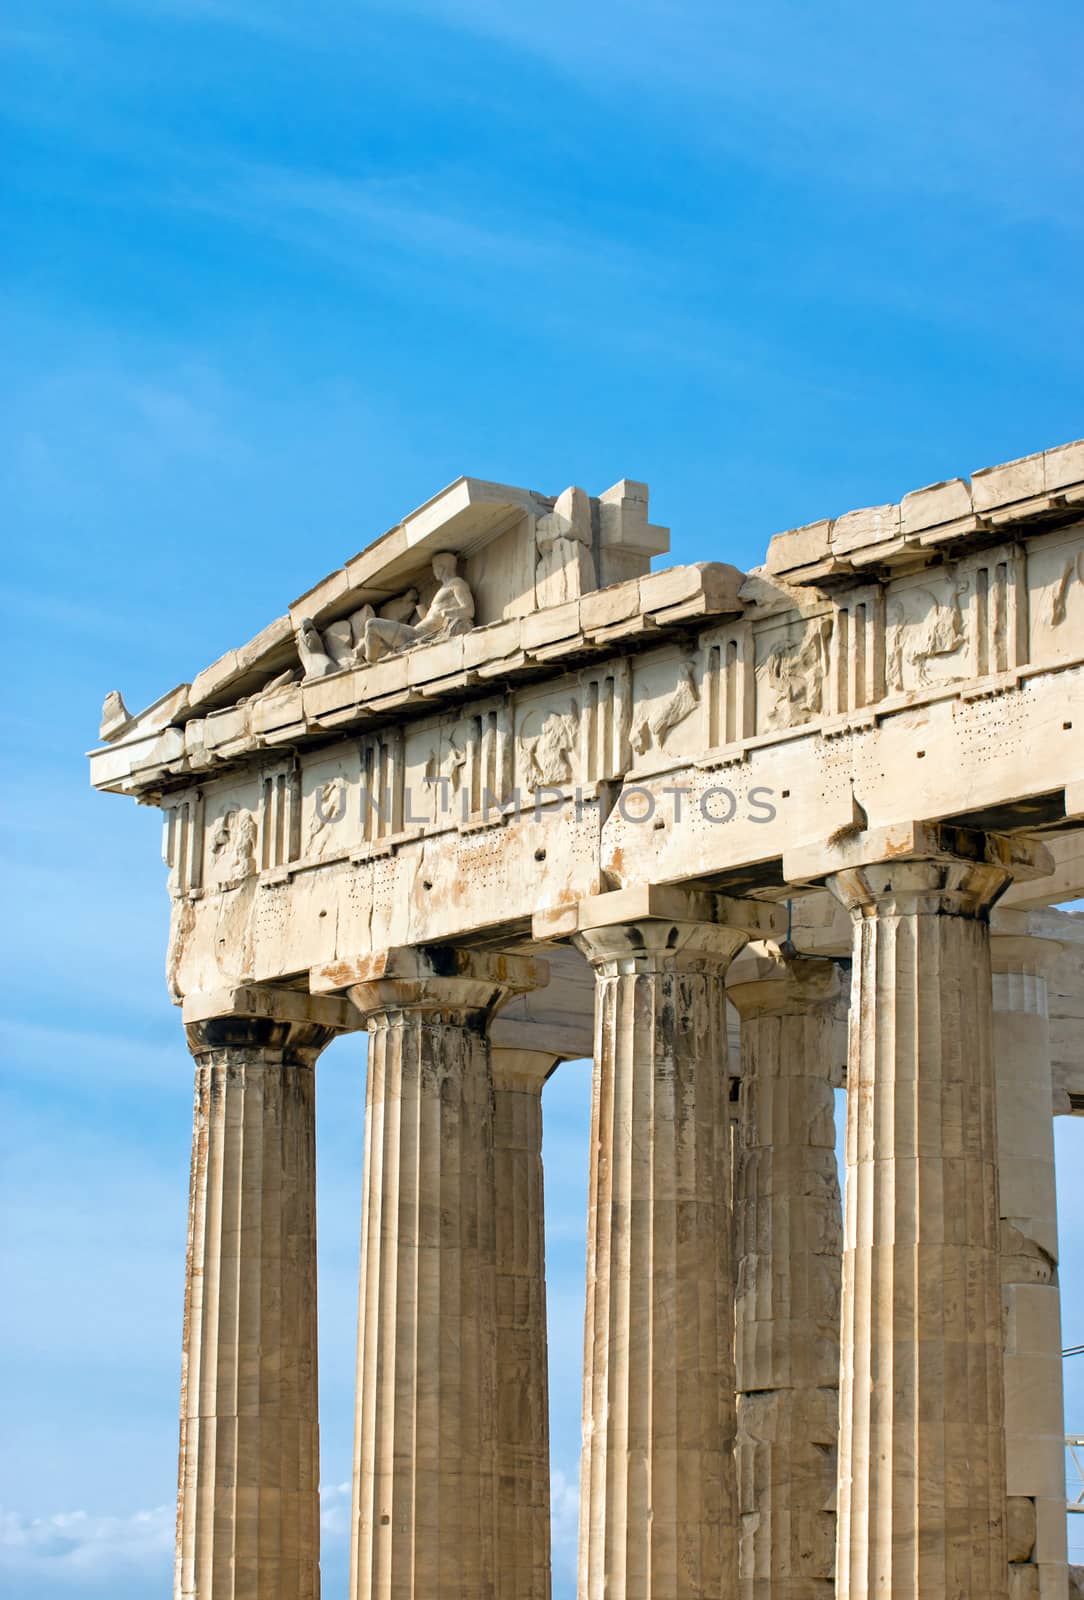 Part of the Parthenon in Athen by elxeneize